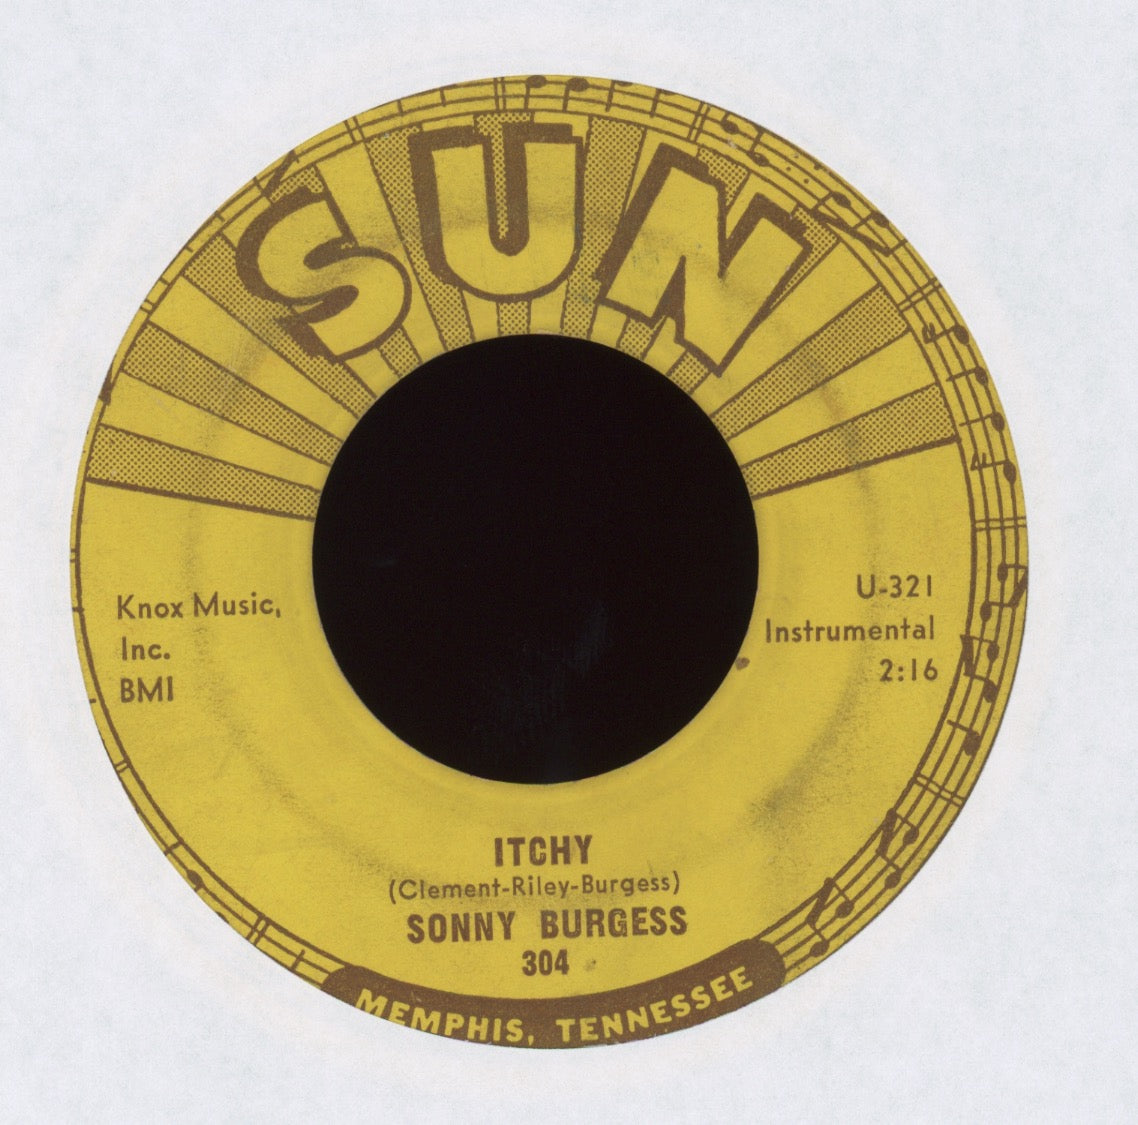 Sonny Burgess - Thunderbird on Sun